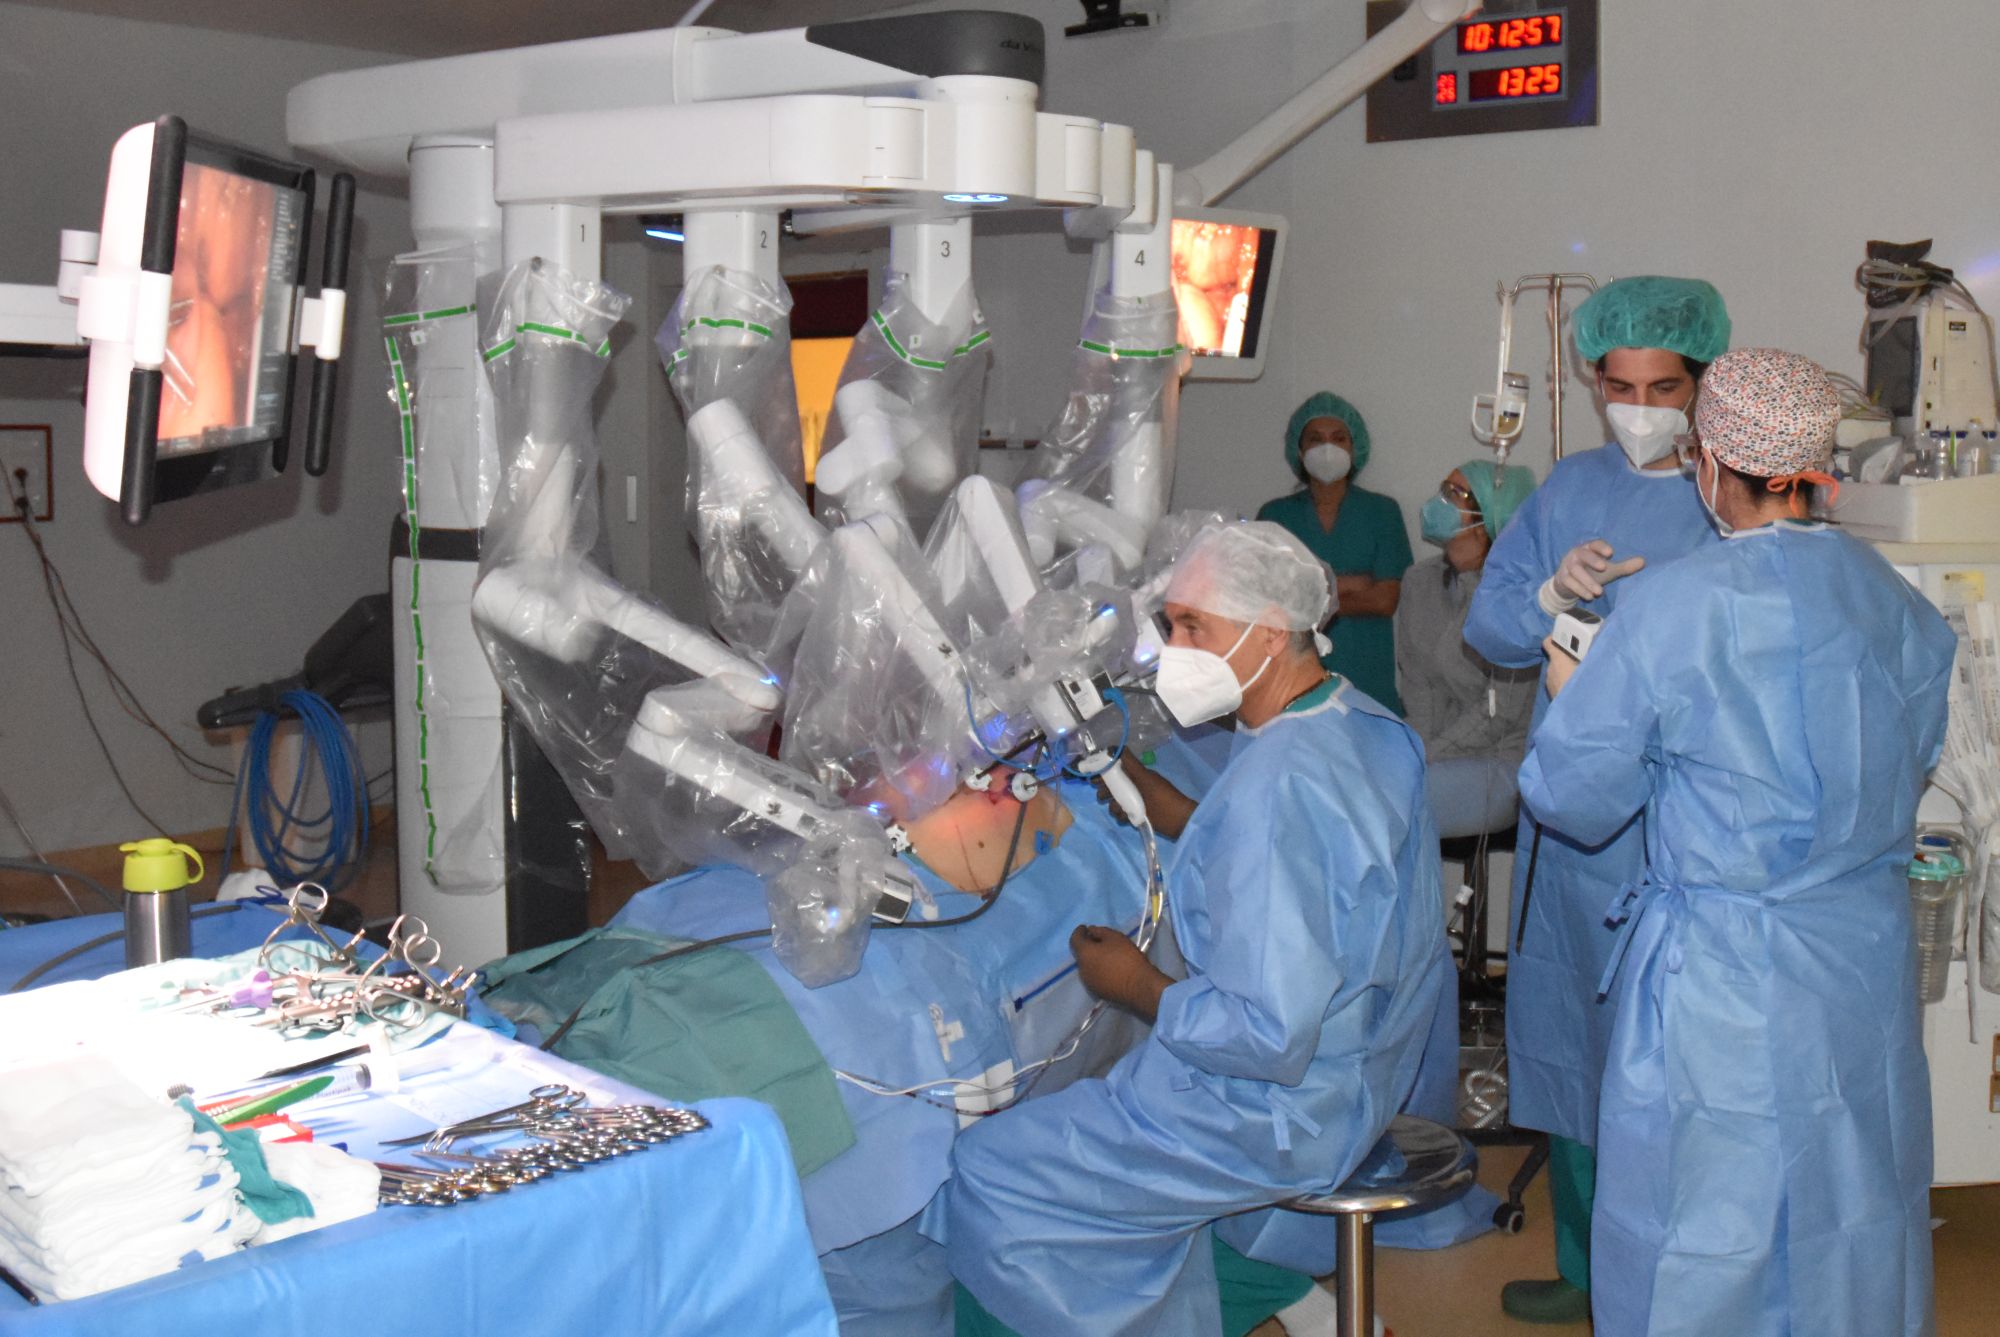 San Donato: asportazione della metà sinistra fegato con la chirurgia robotica